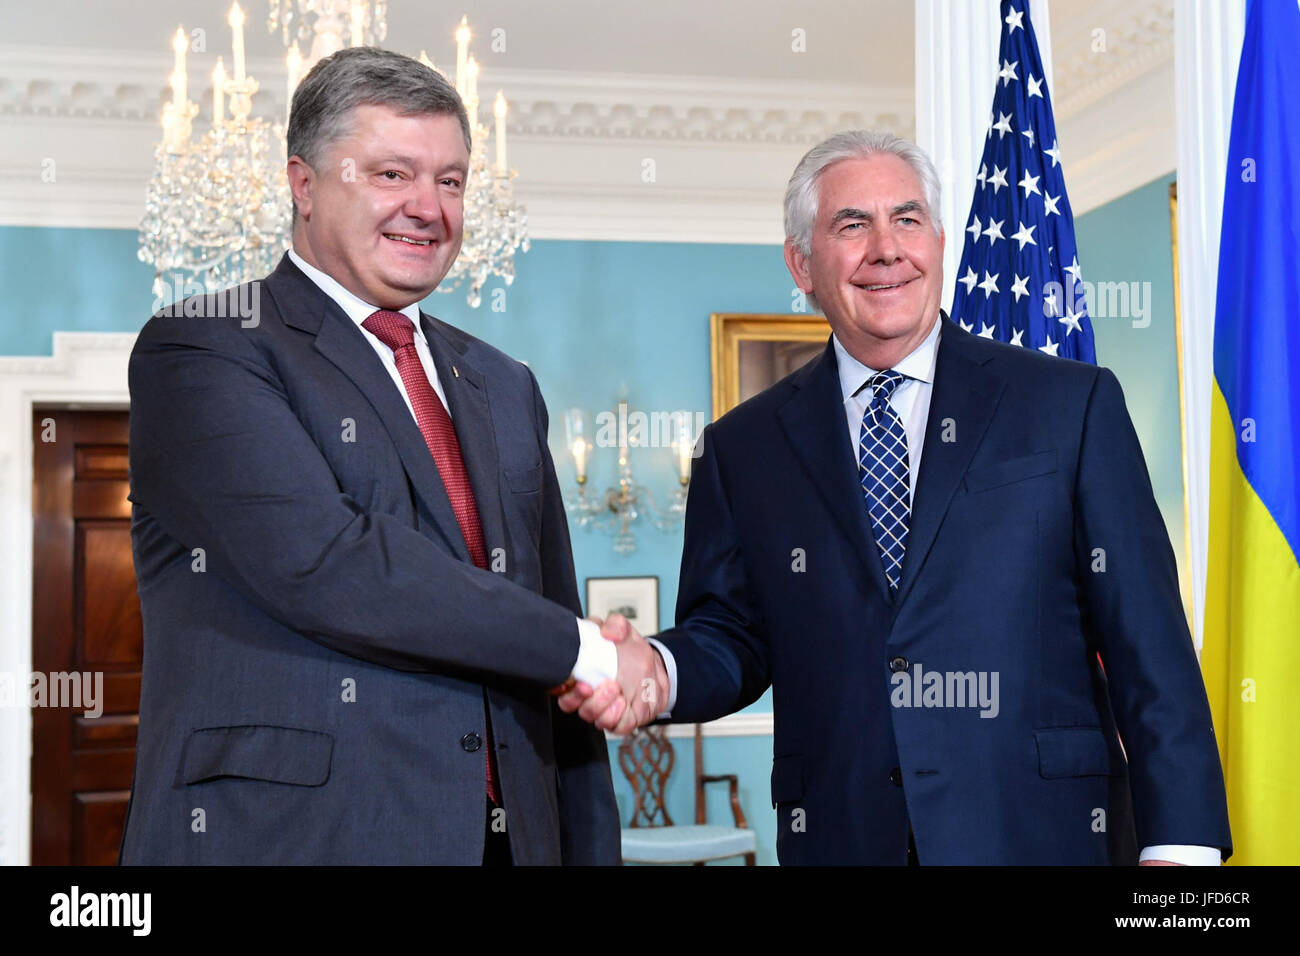 La secrétaire d'État des États-Unis, Rex Tillerson et le Président ukrainien Porochenko se serrent la main avant de leur réunion bilatérale au département d'État des États-Unis à Washington, D.C., le 20 juin 2017. Banque D'Images